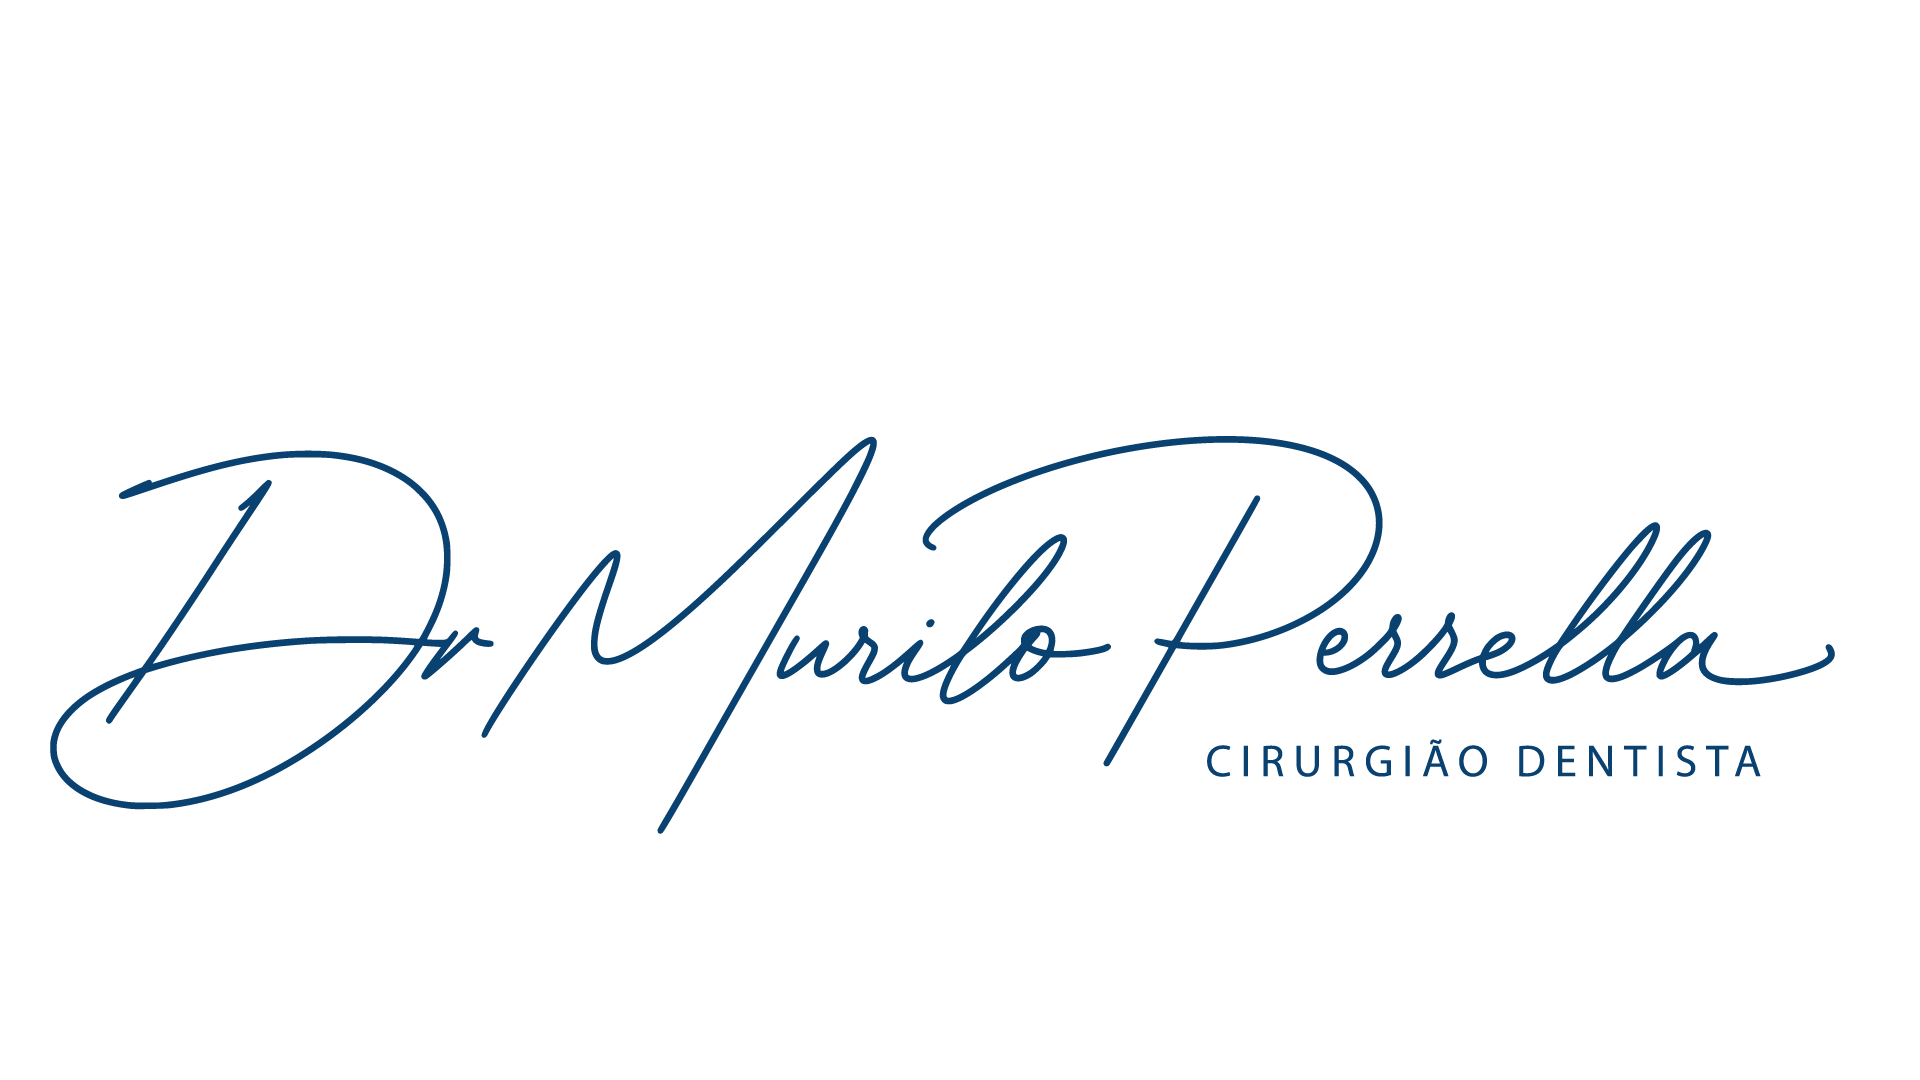 Dr. Murilo Merrella